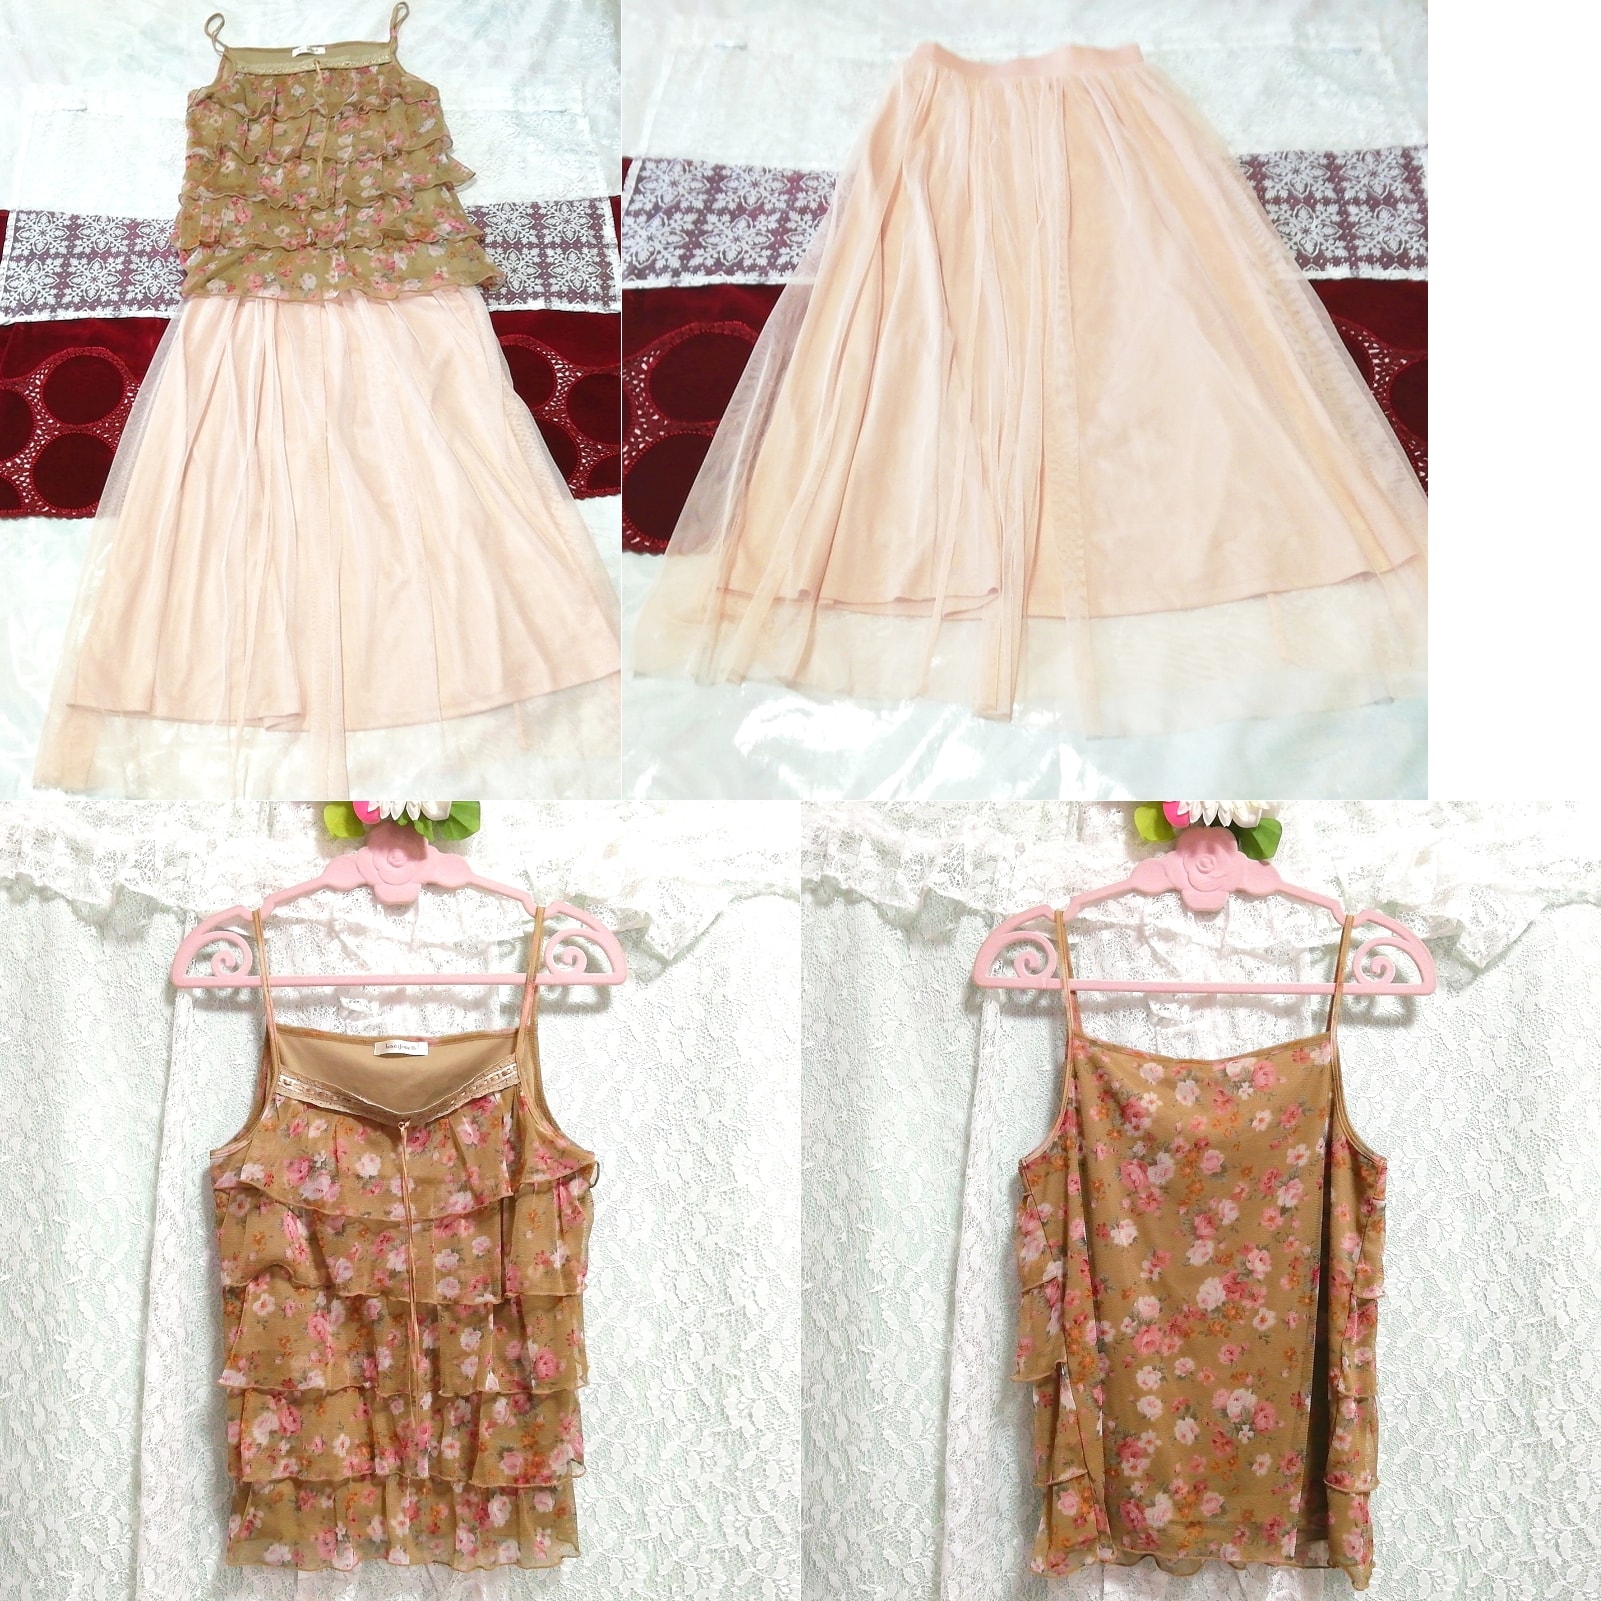 棕色褶边吊带背心睡衣粉色长薄纱半身裙 2 件, 时尚, 女士时装, 睡衣